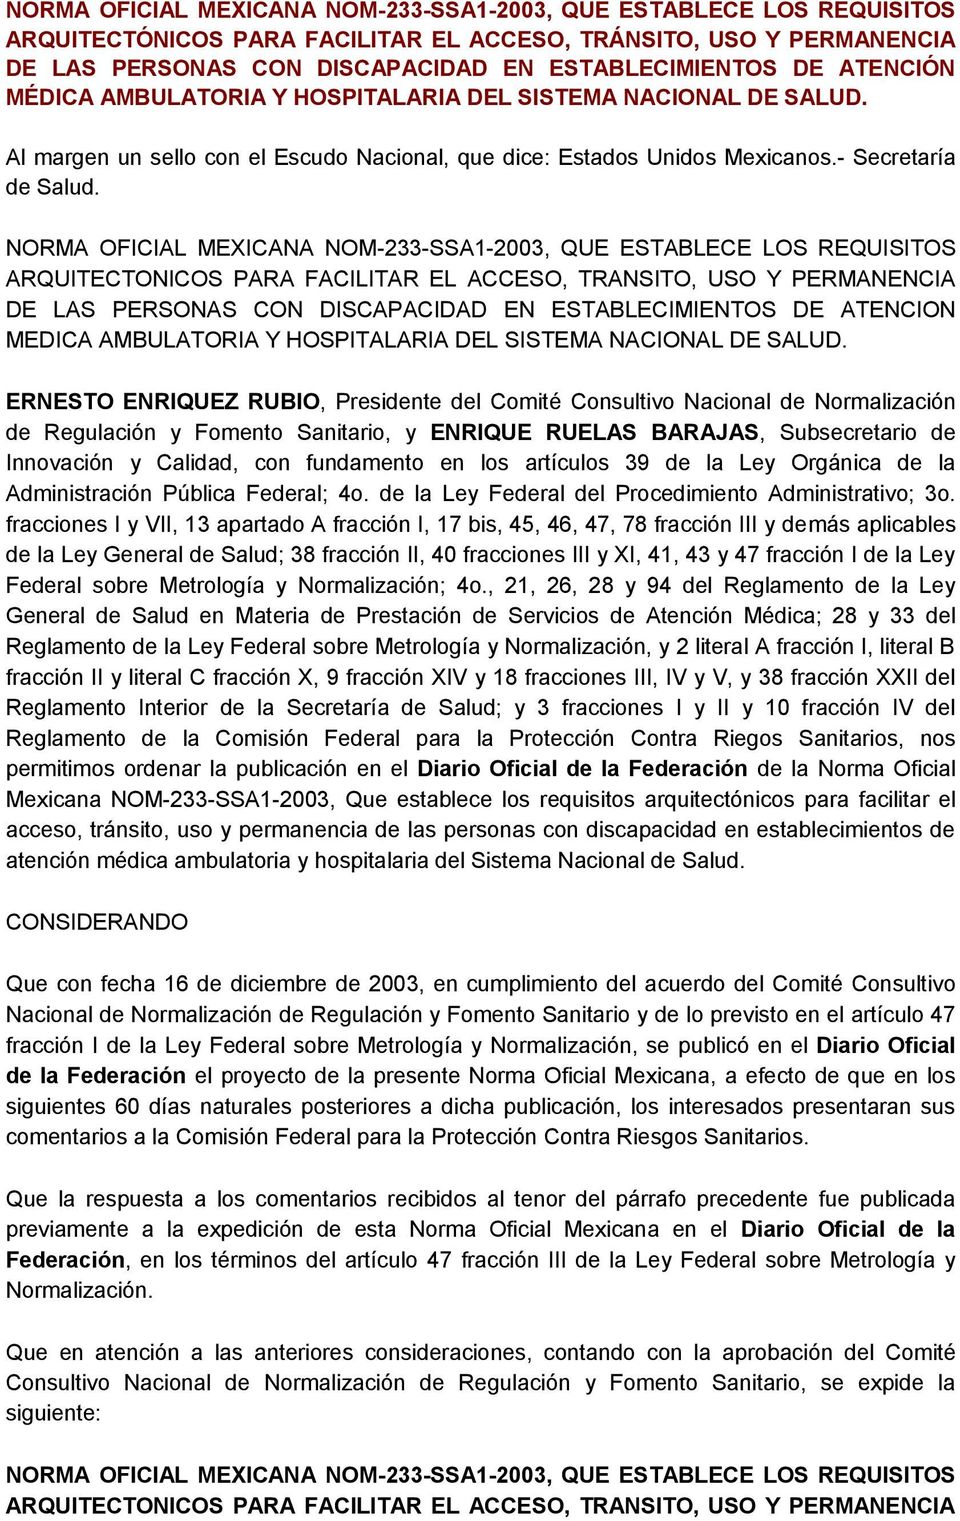 NORMA OFICIAL MEXICANA NOM-233-SSA1-2003, QUE ESTABLECE LOS REQUISITOS ARQUITECTONICOS PARA FACILITAR EL ACCESO, TRANSITO, USO Y PERMANENCIA DE LAS PERSONAS CON DISCAPACIDAD EN ESTABLECIMIENTOS DE